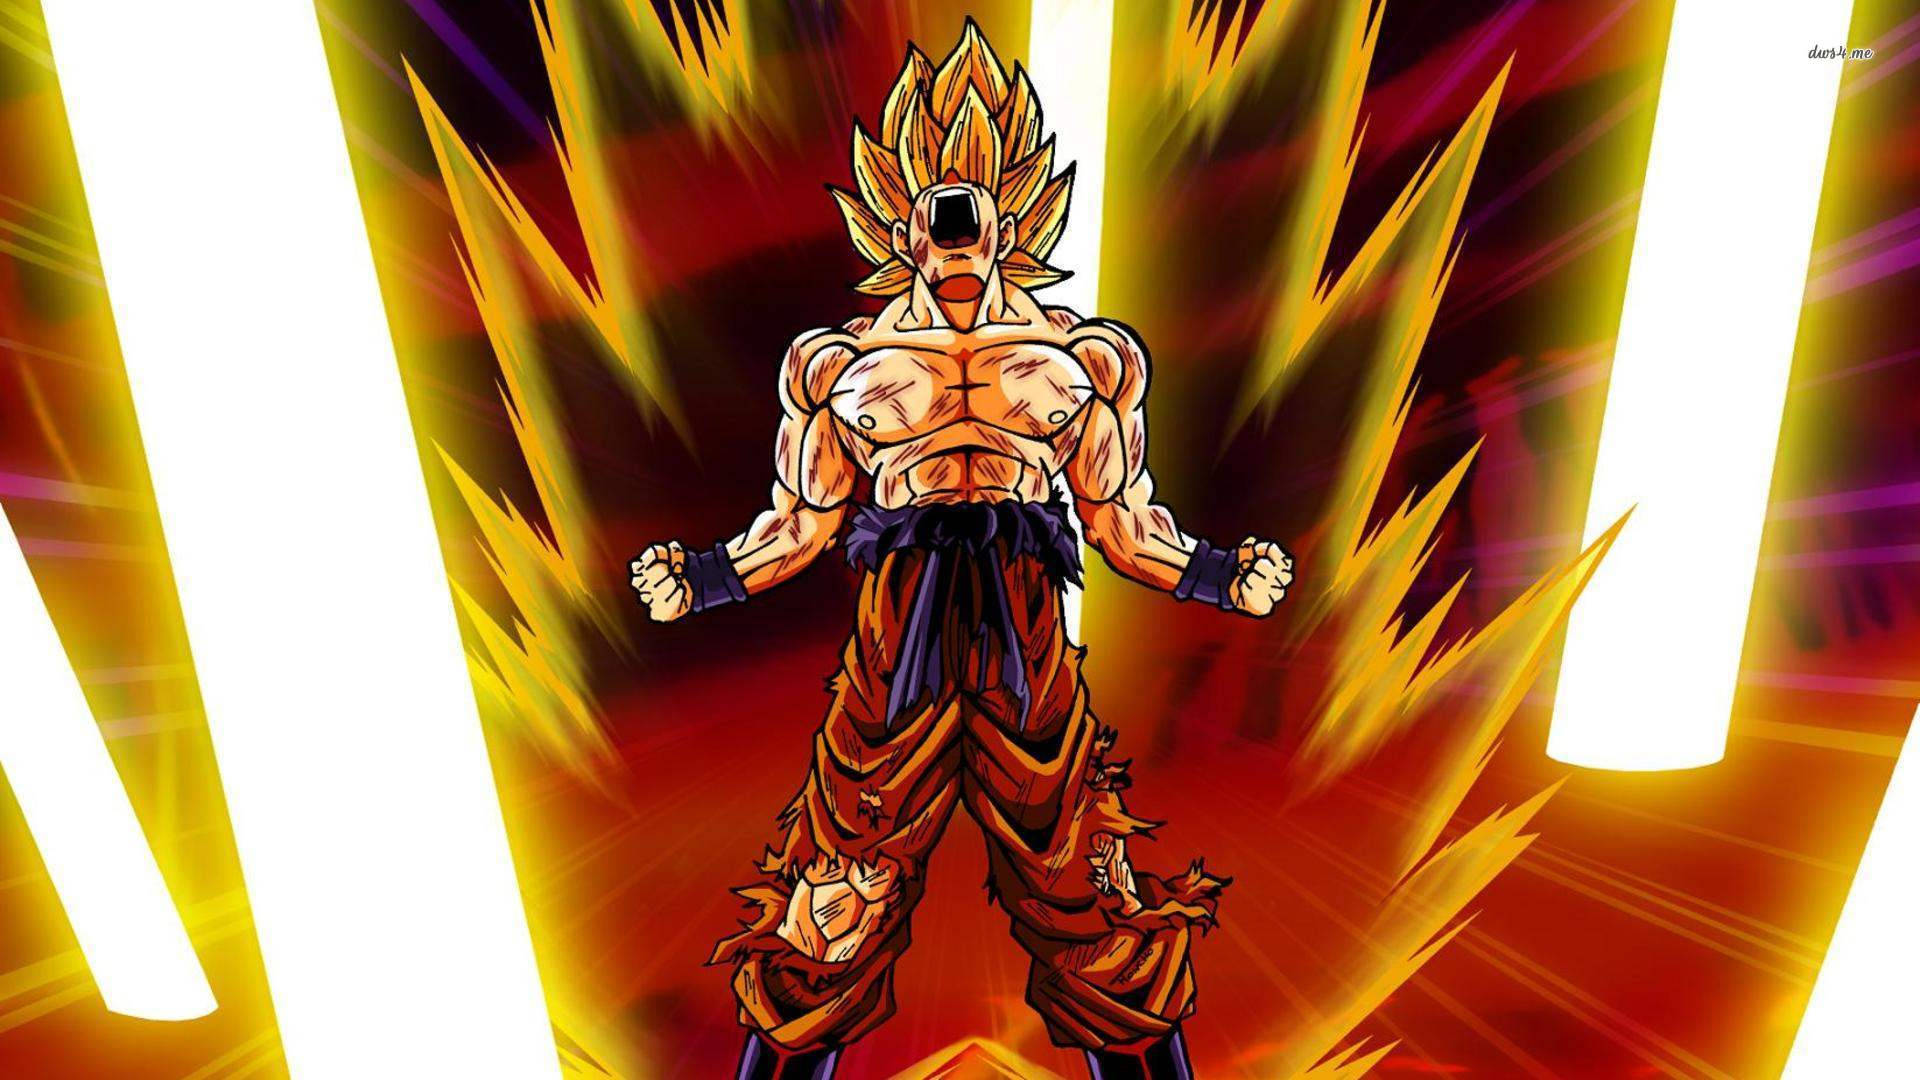 Intense Training - Goku In Super Saiyan Form Wallpaper